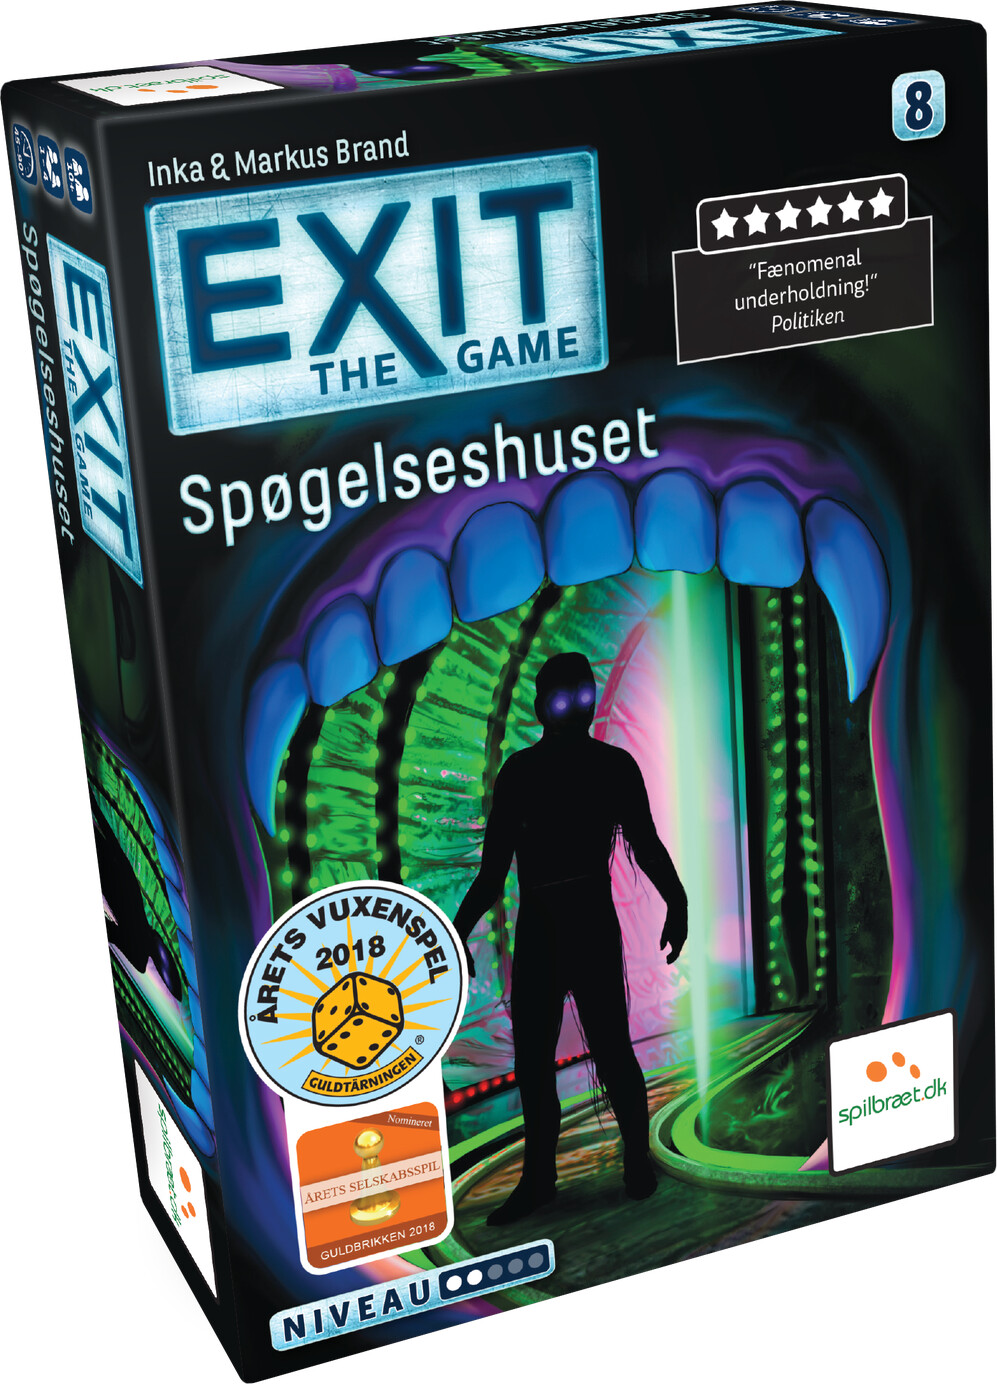 Exit The Game 8 - Spøgelseshuset - Dansk Sværhedsgrad 2 | Se tilbud og køb på Gucca.dk